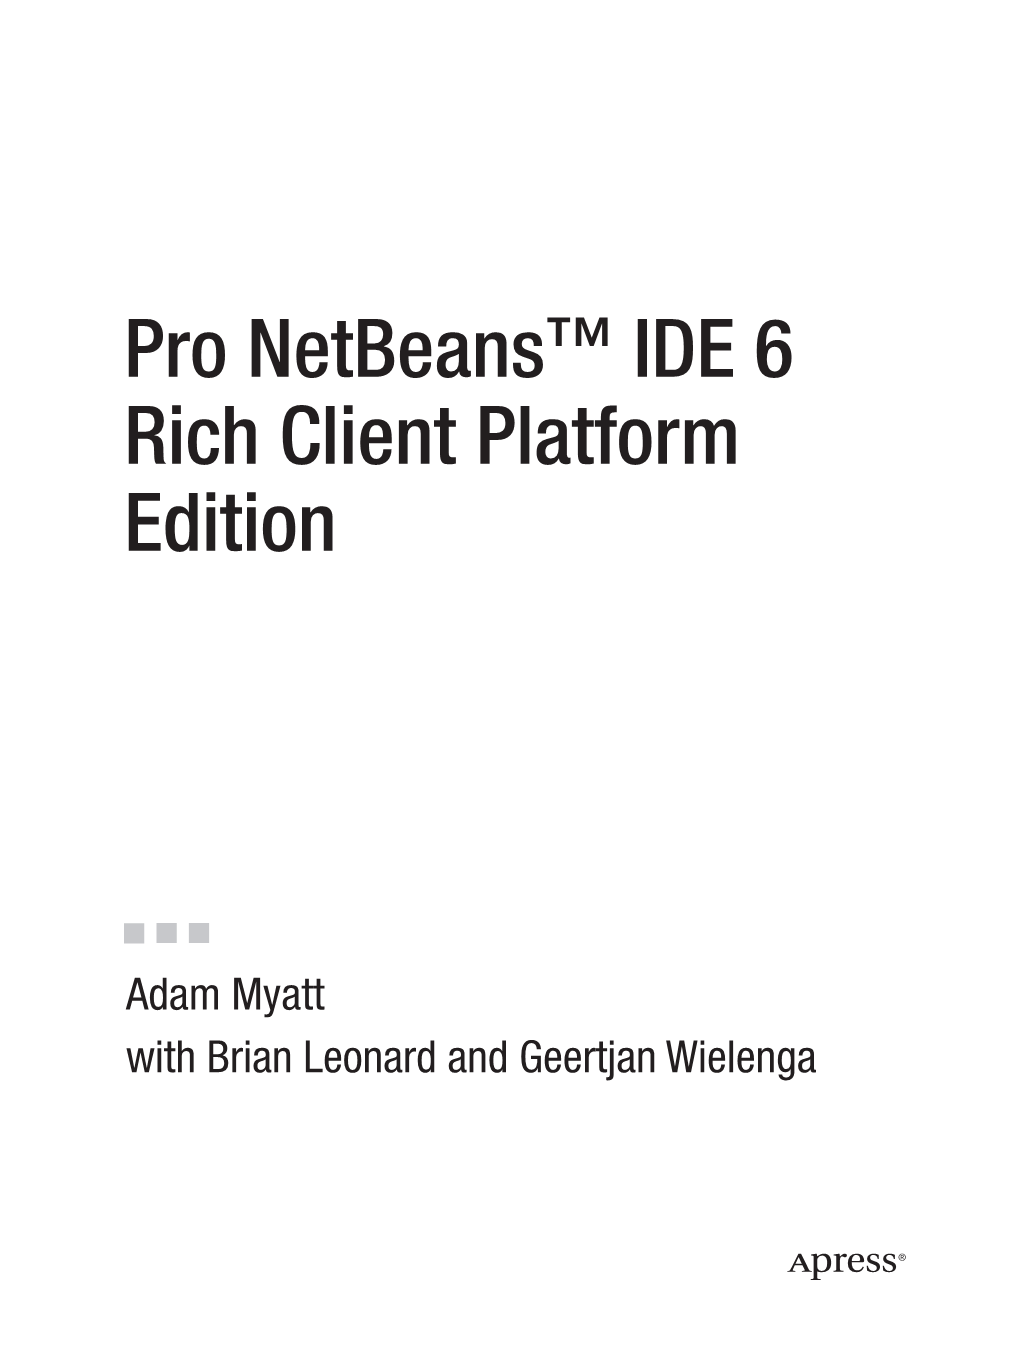 Pro Netbeans™ IDE 6 Rich Client Platform Edition